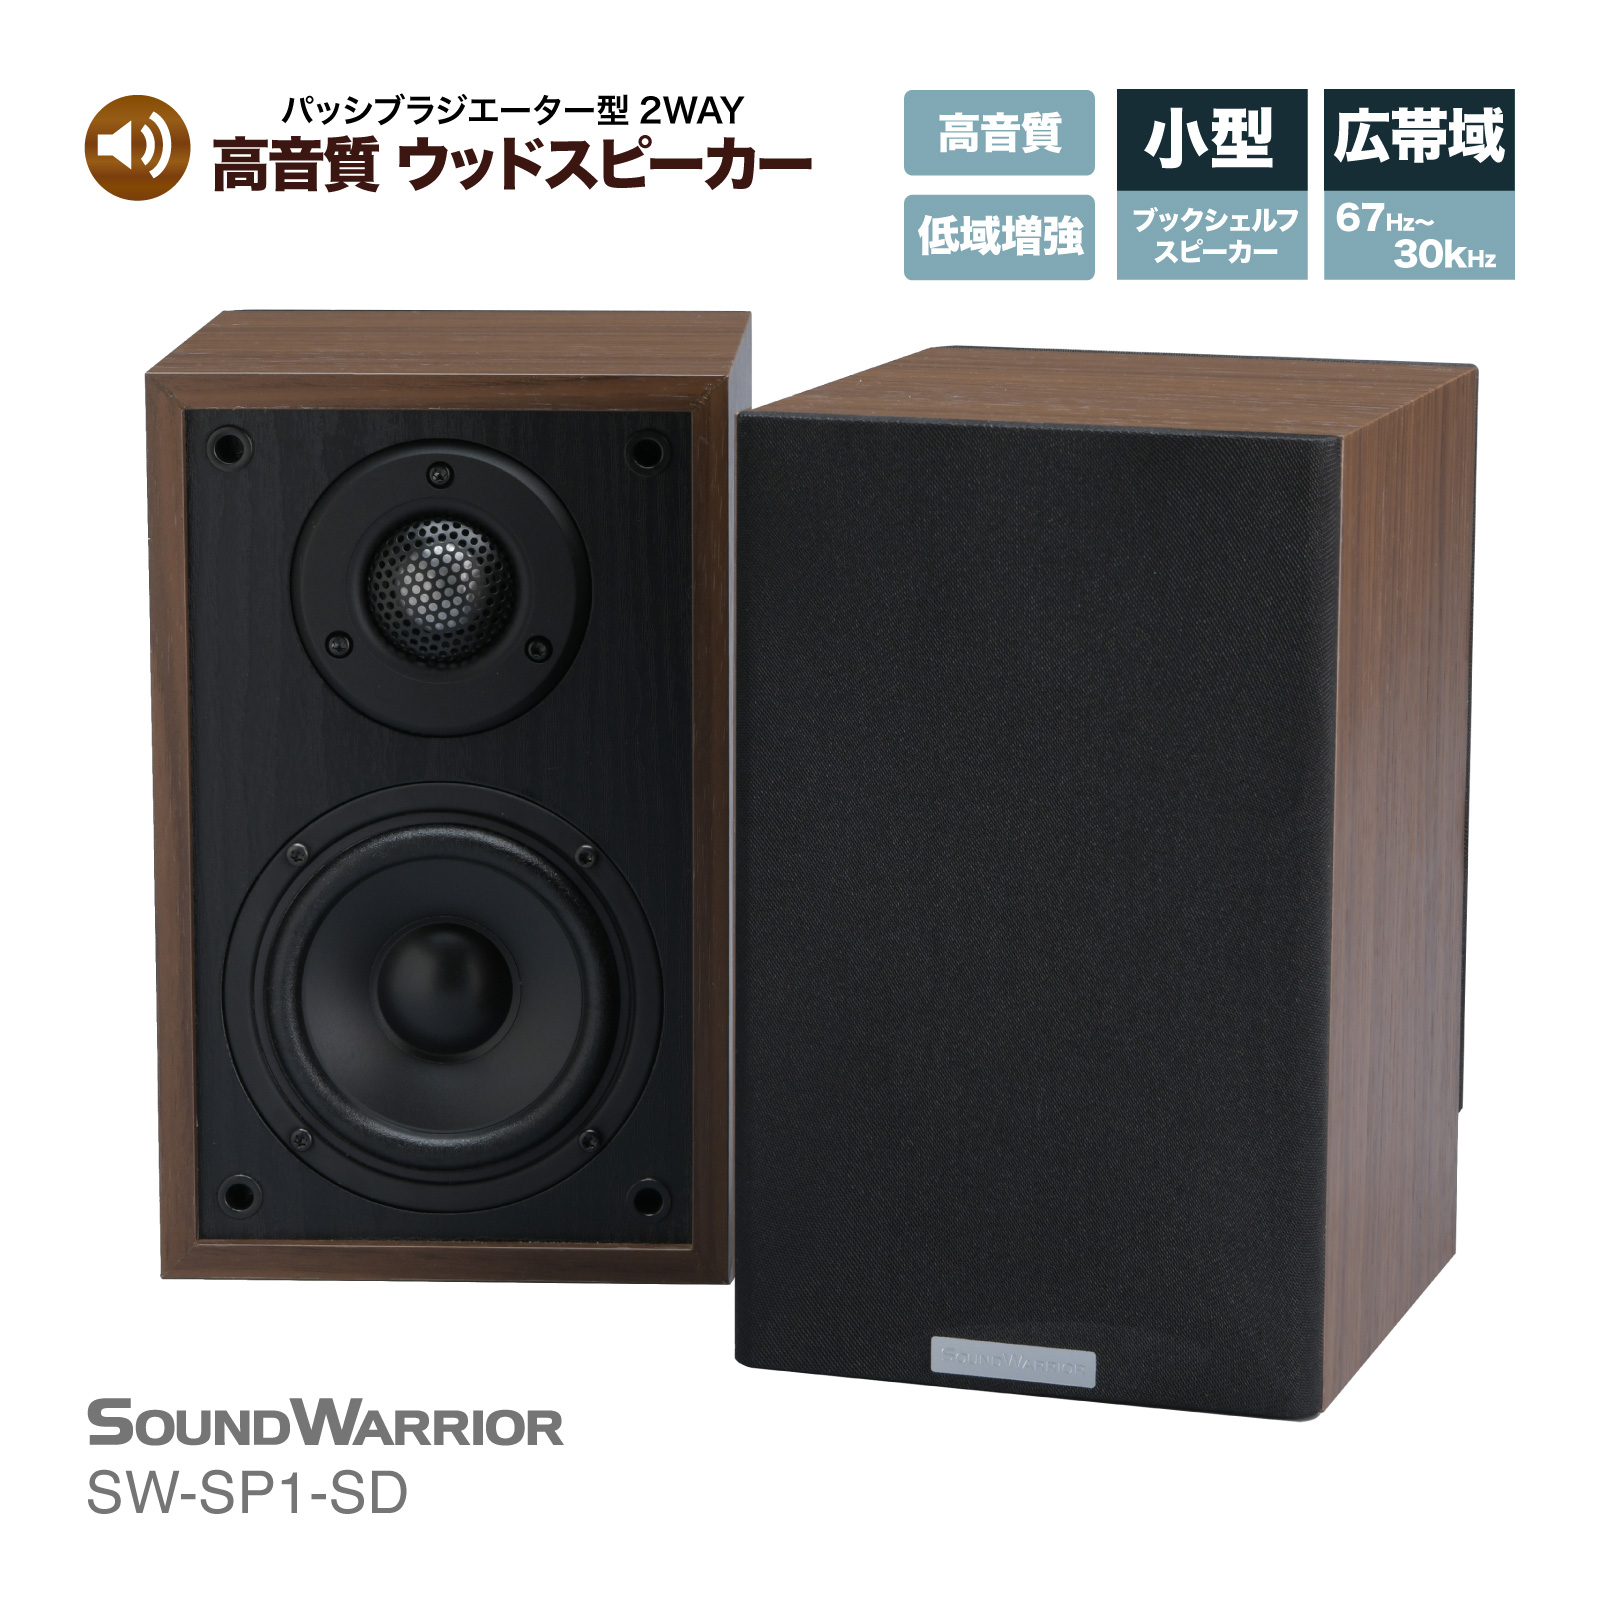 城下工業 SW-SP1 SoundWarrior ブックシェルフ型スピーカーの商品画像